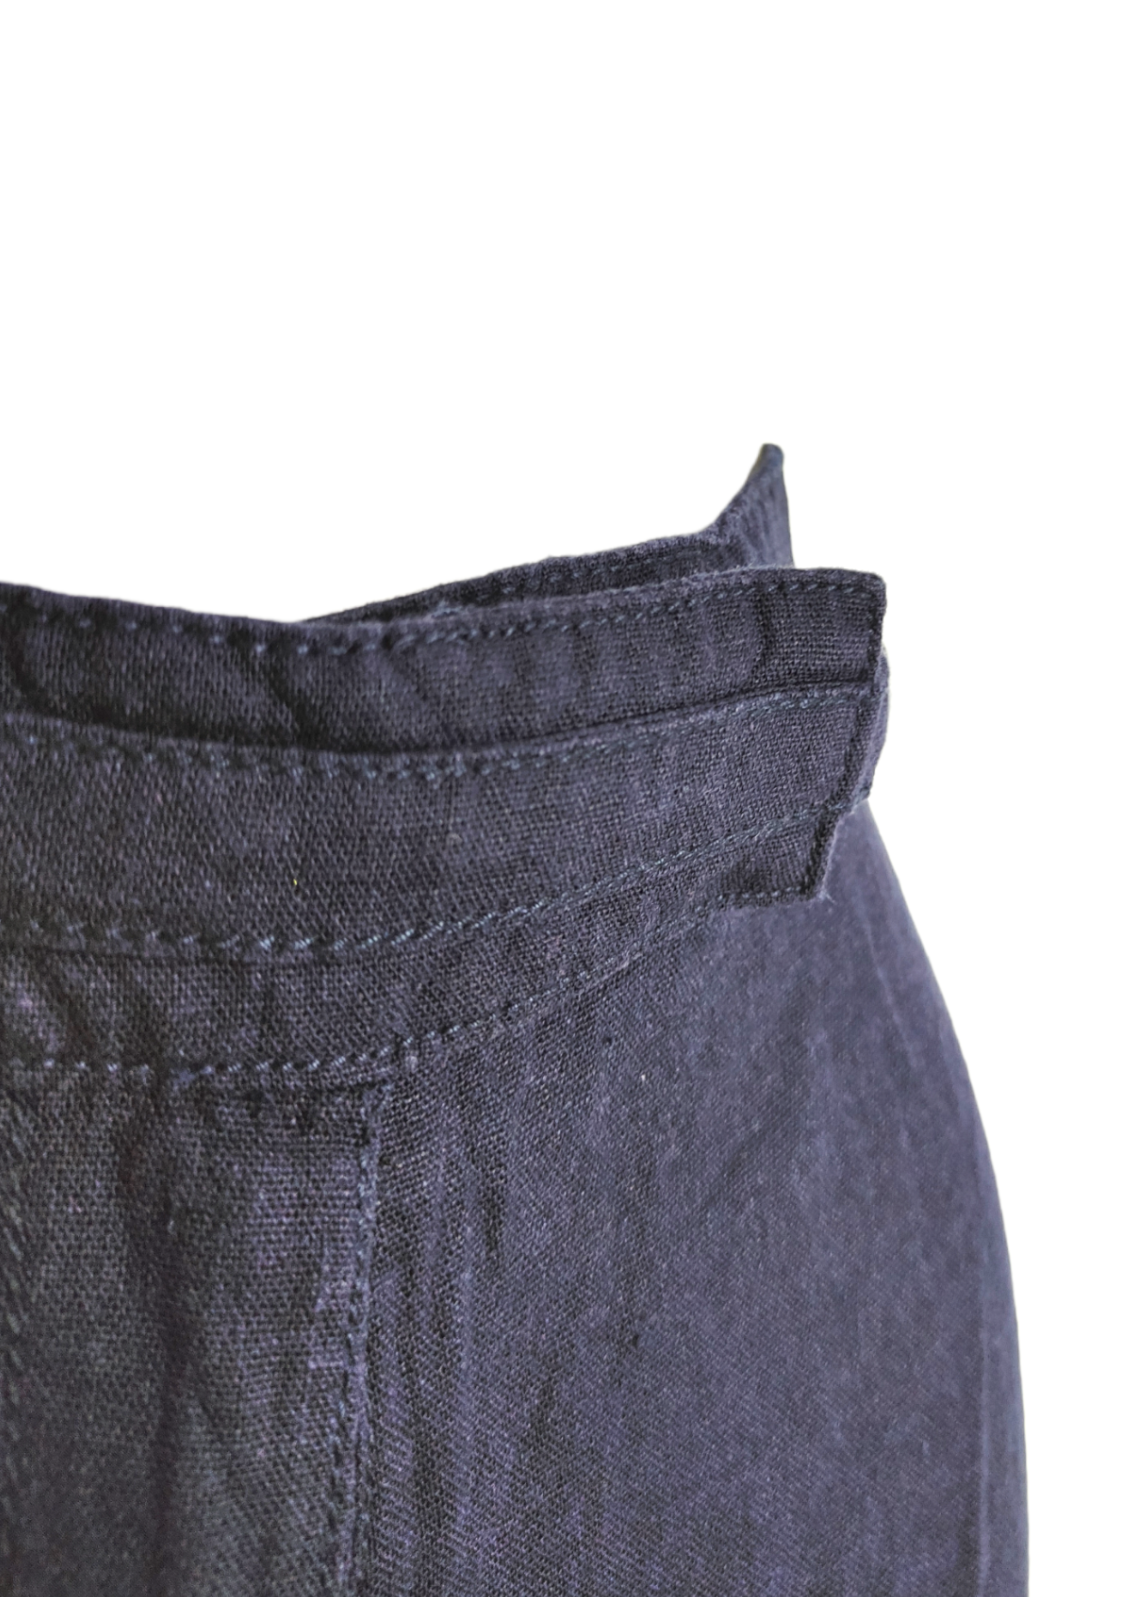 Γυναικεία Παντελόνα MANA σε Σκούρο Μπλε Χρώμα (Large)